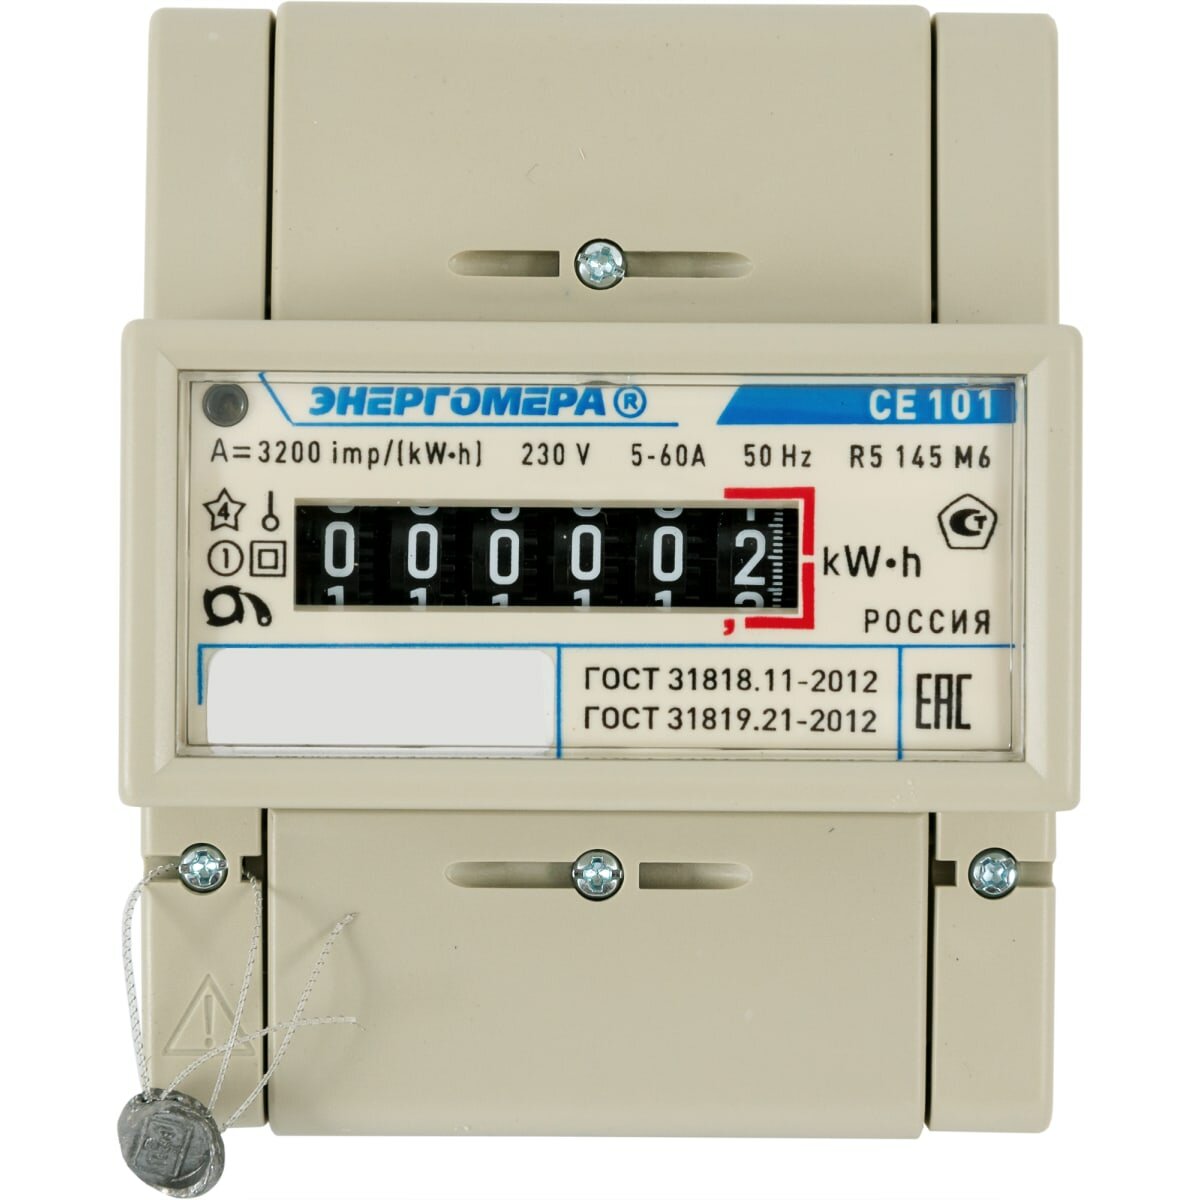 Счётчик электроэнергии CE101 R5 145 M6 однофазный